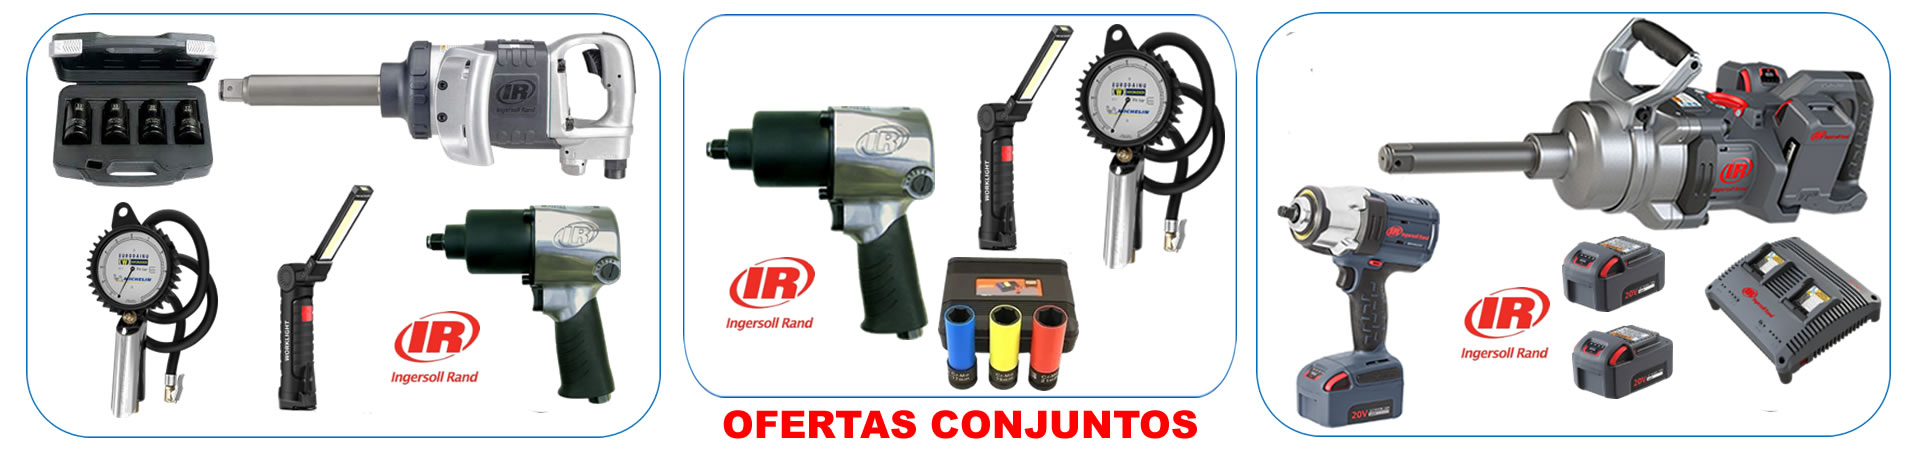 alcaner-shop_soluciones-tienda_industria-automación_equipamento_maquinaria_servicio-tecnico_distribuidor-oficial-ingersoll-rand_madrid-espana_ofertas